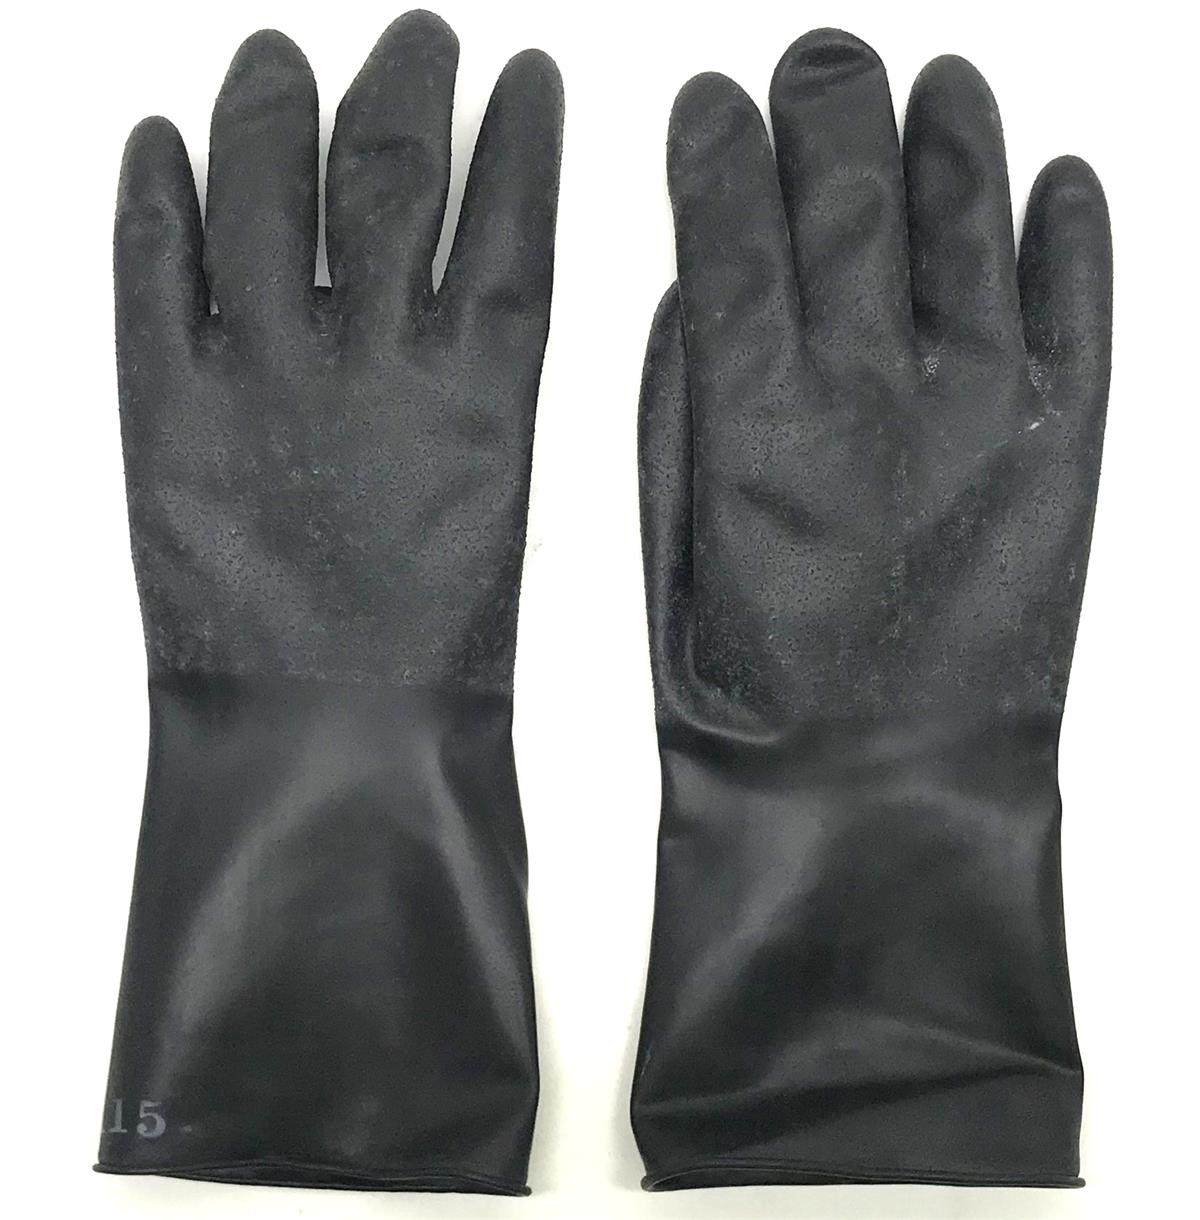 SP-2335 | Special Hazmat Equipment Gloves.jpg